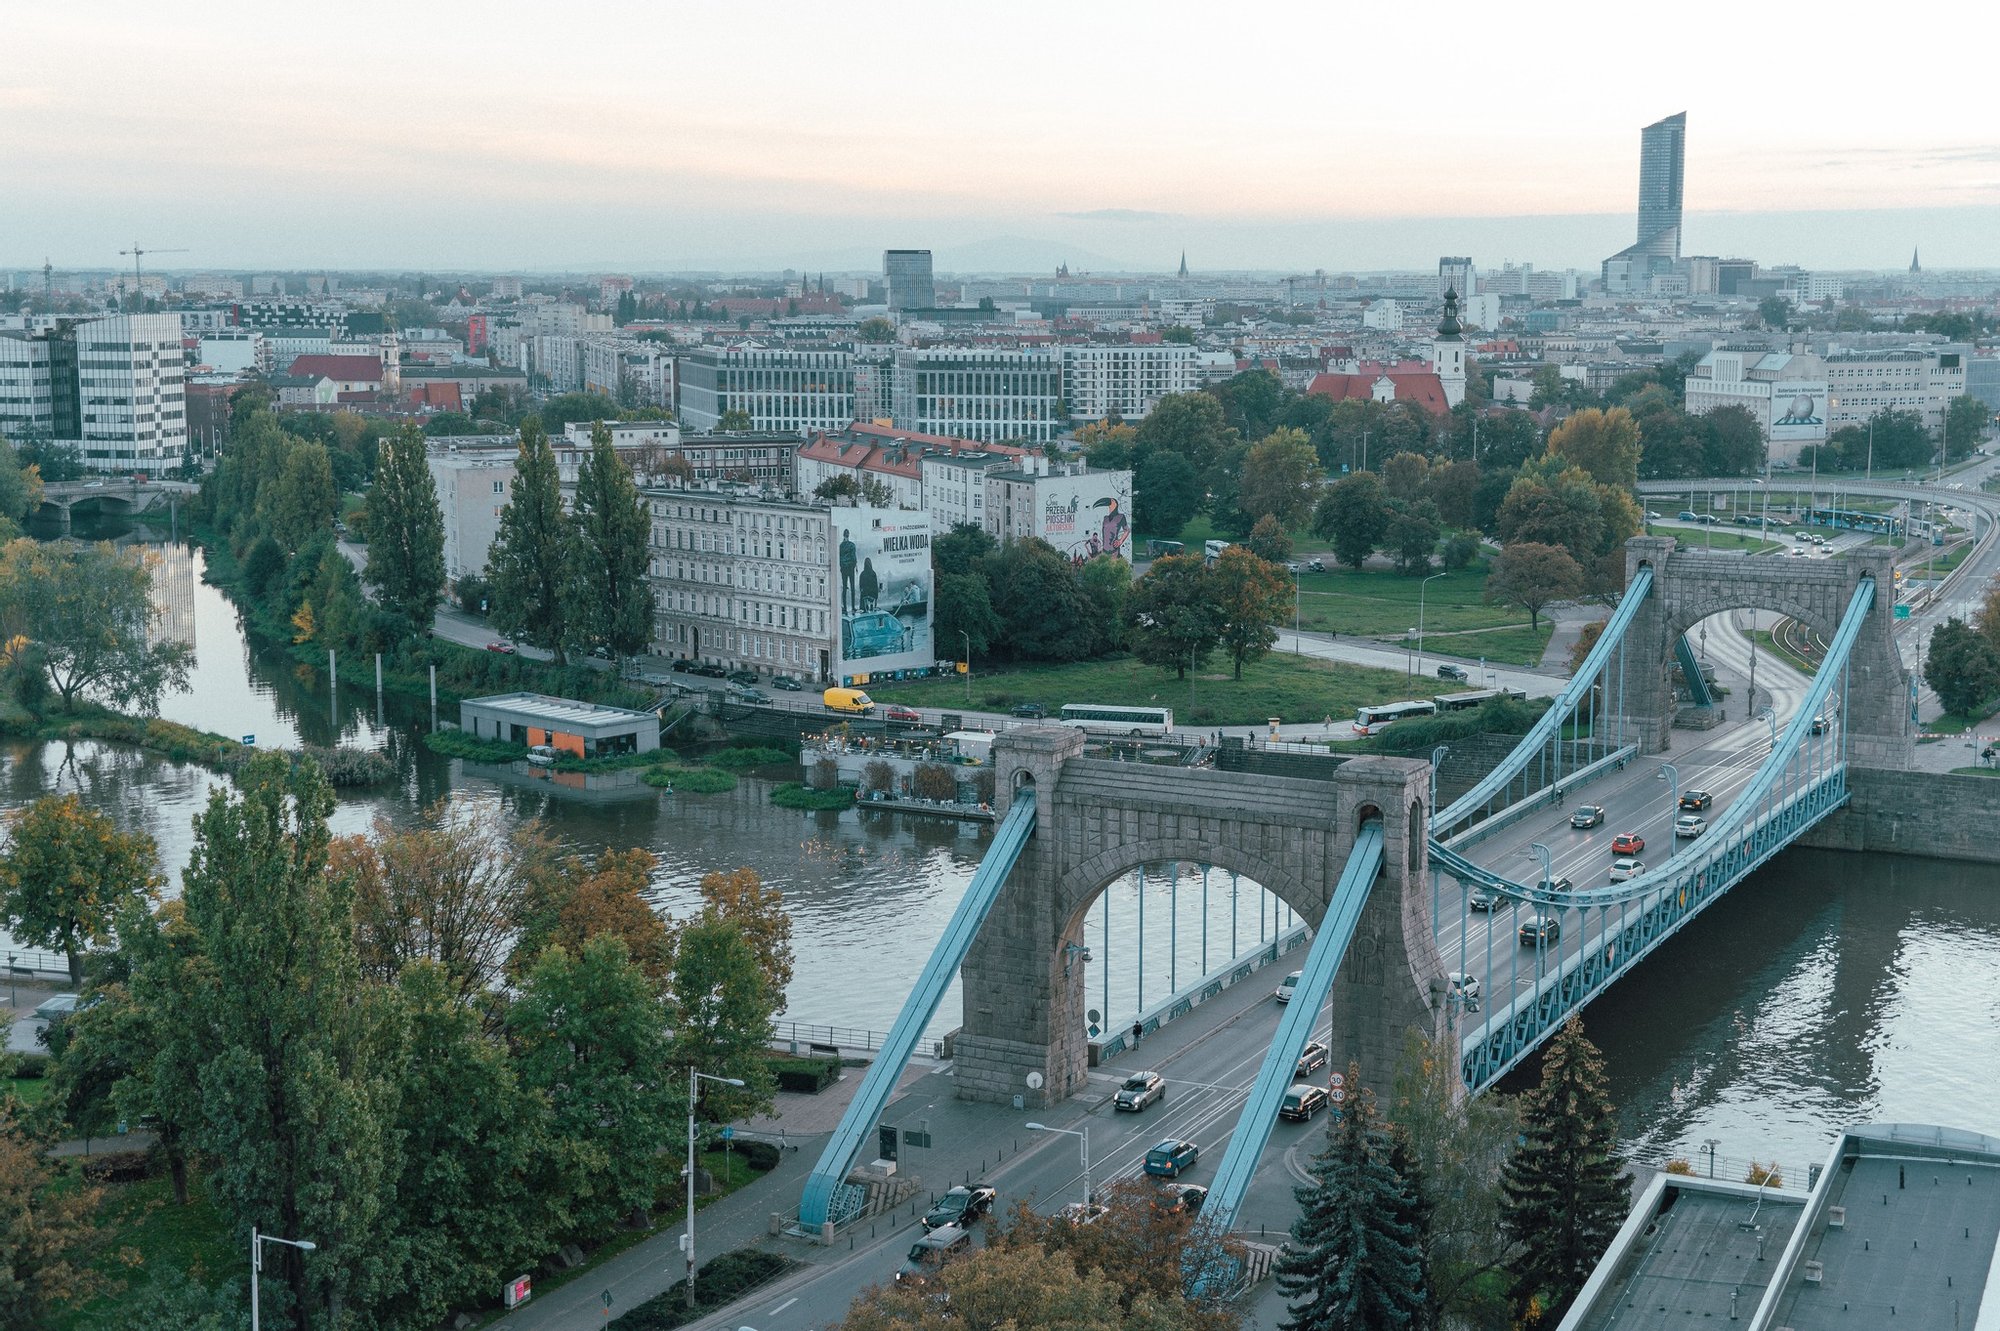 Kolorowa, pozioma fotografia przedstawiająca widok z lotu ptaka na most Grunwaldzki oraz część miasta. 